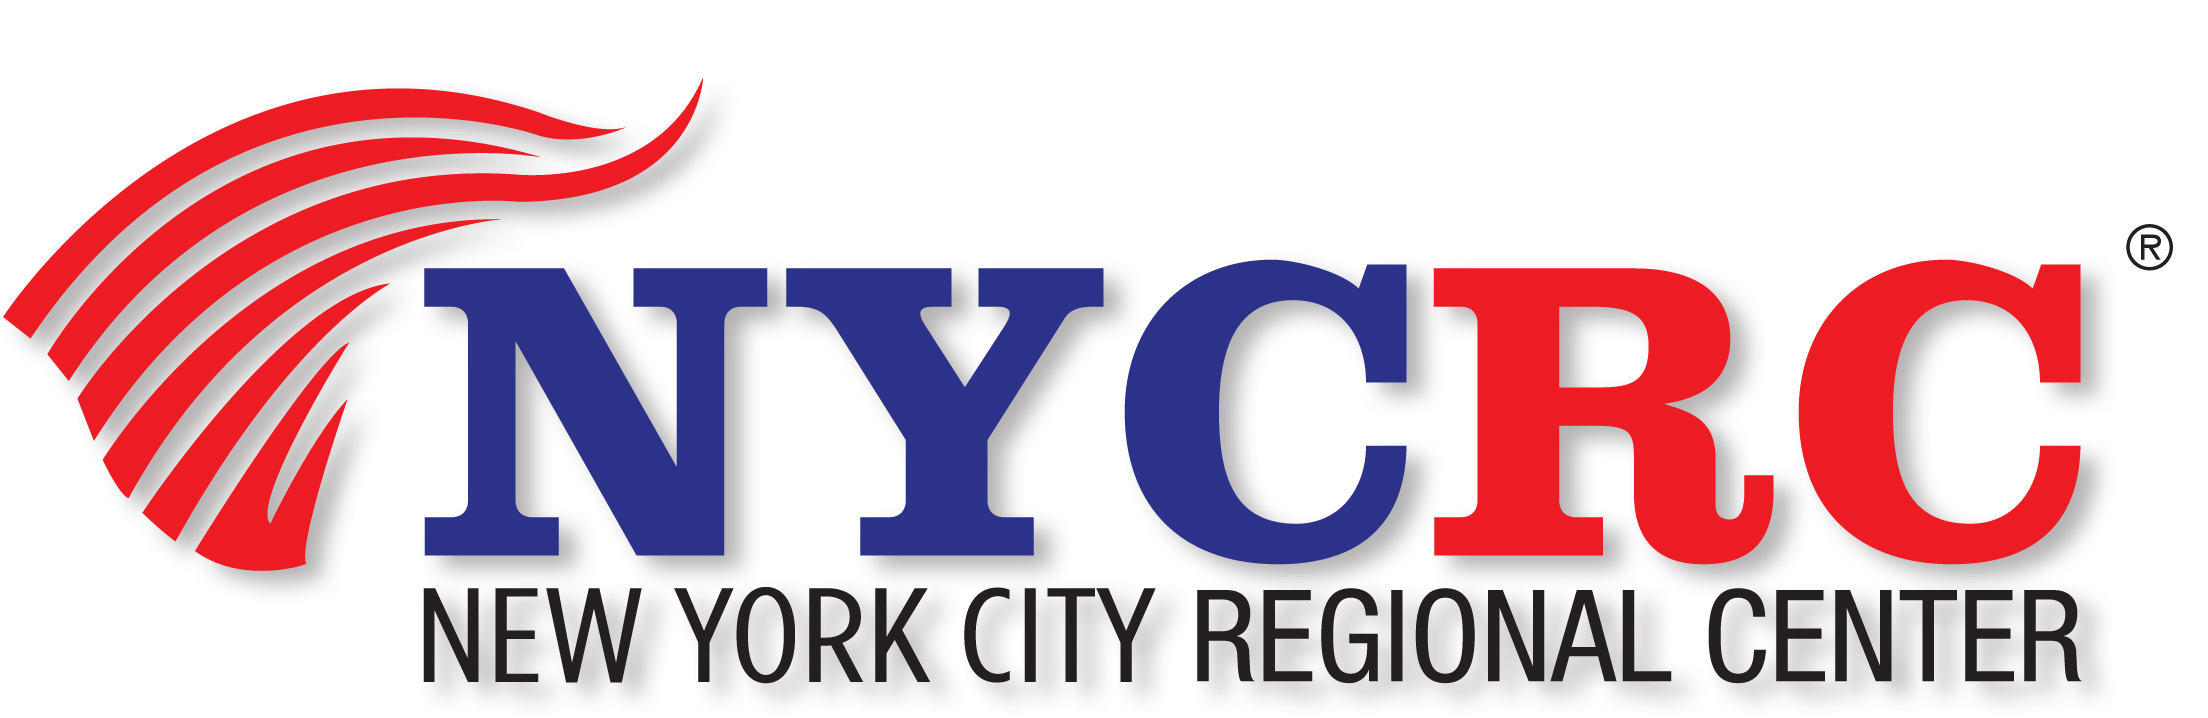 NYCRC_logo_060112 (R).jpg